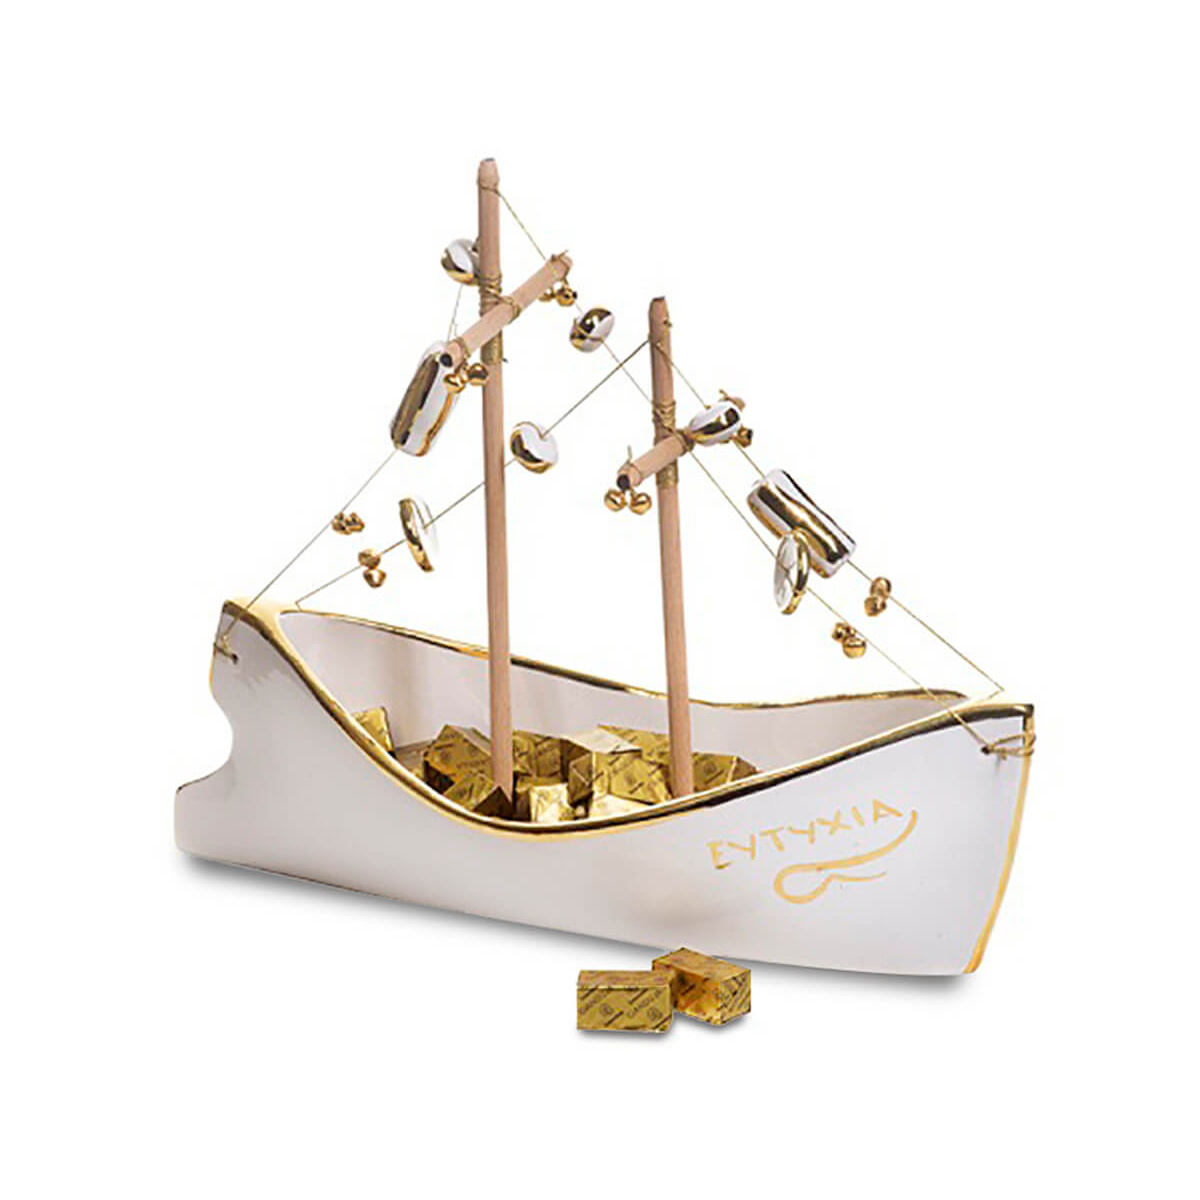 350γρ τυλιχτά σοκολατάκια Gianduja και κεραμικό καράβι με φύλλο χρυσού "Μαρία Μόρτογλου χειροποίητο" μεγάλο μέγεθος 36cm